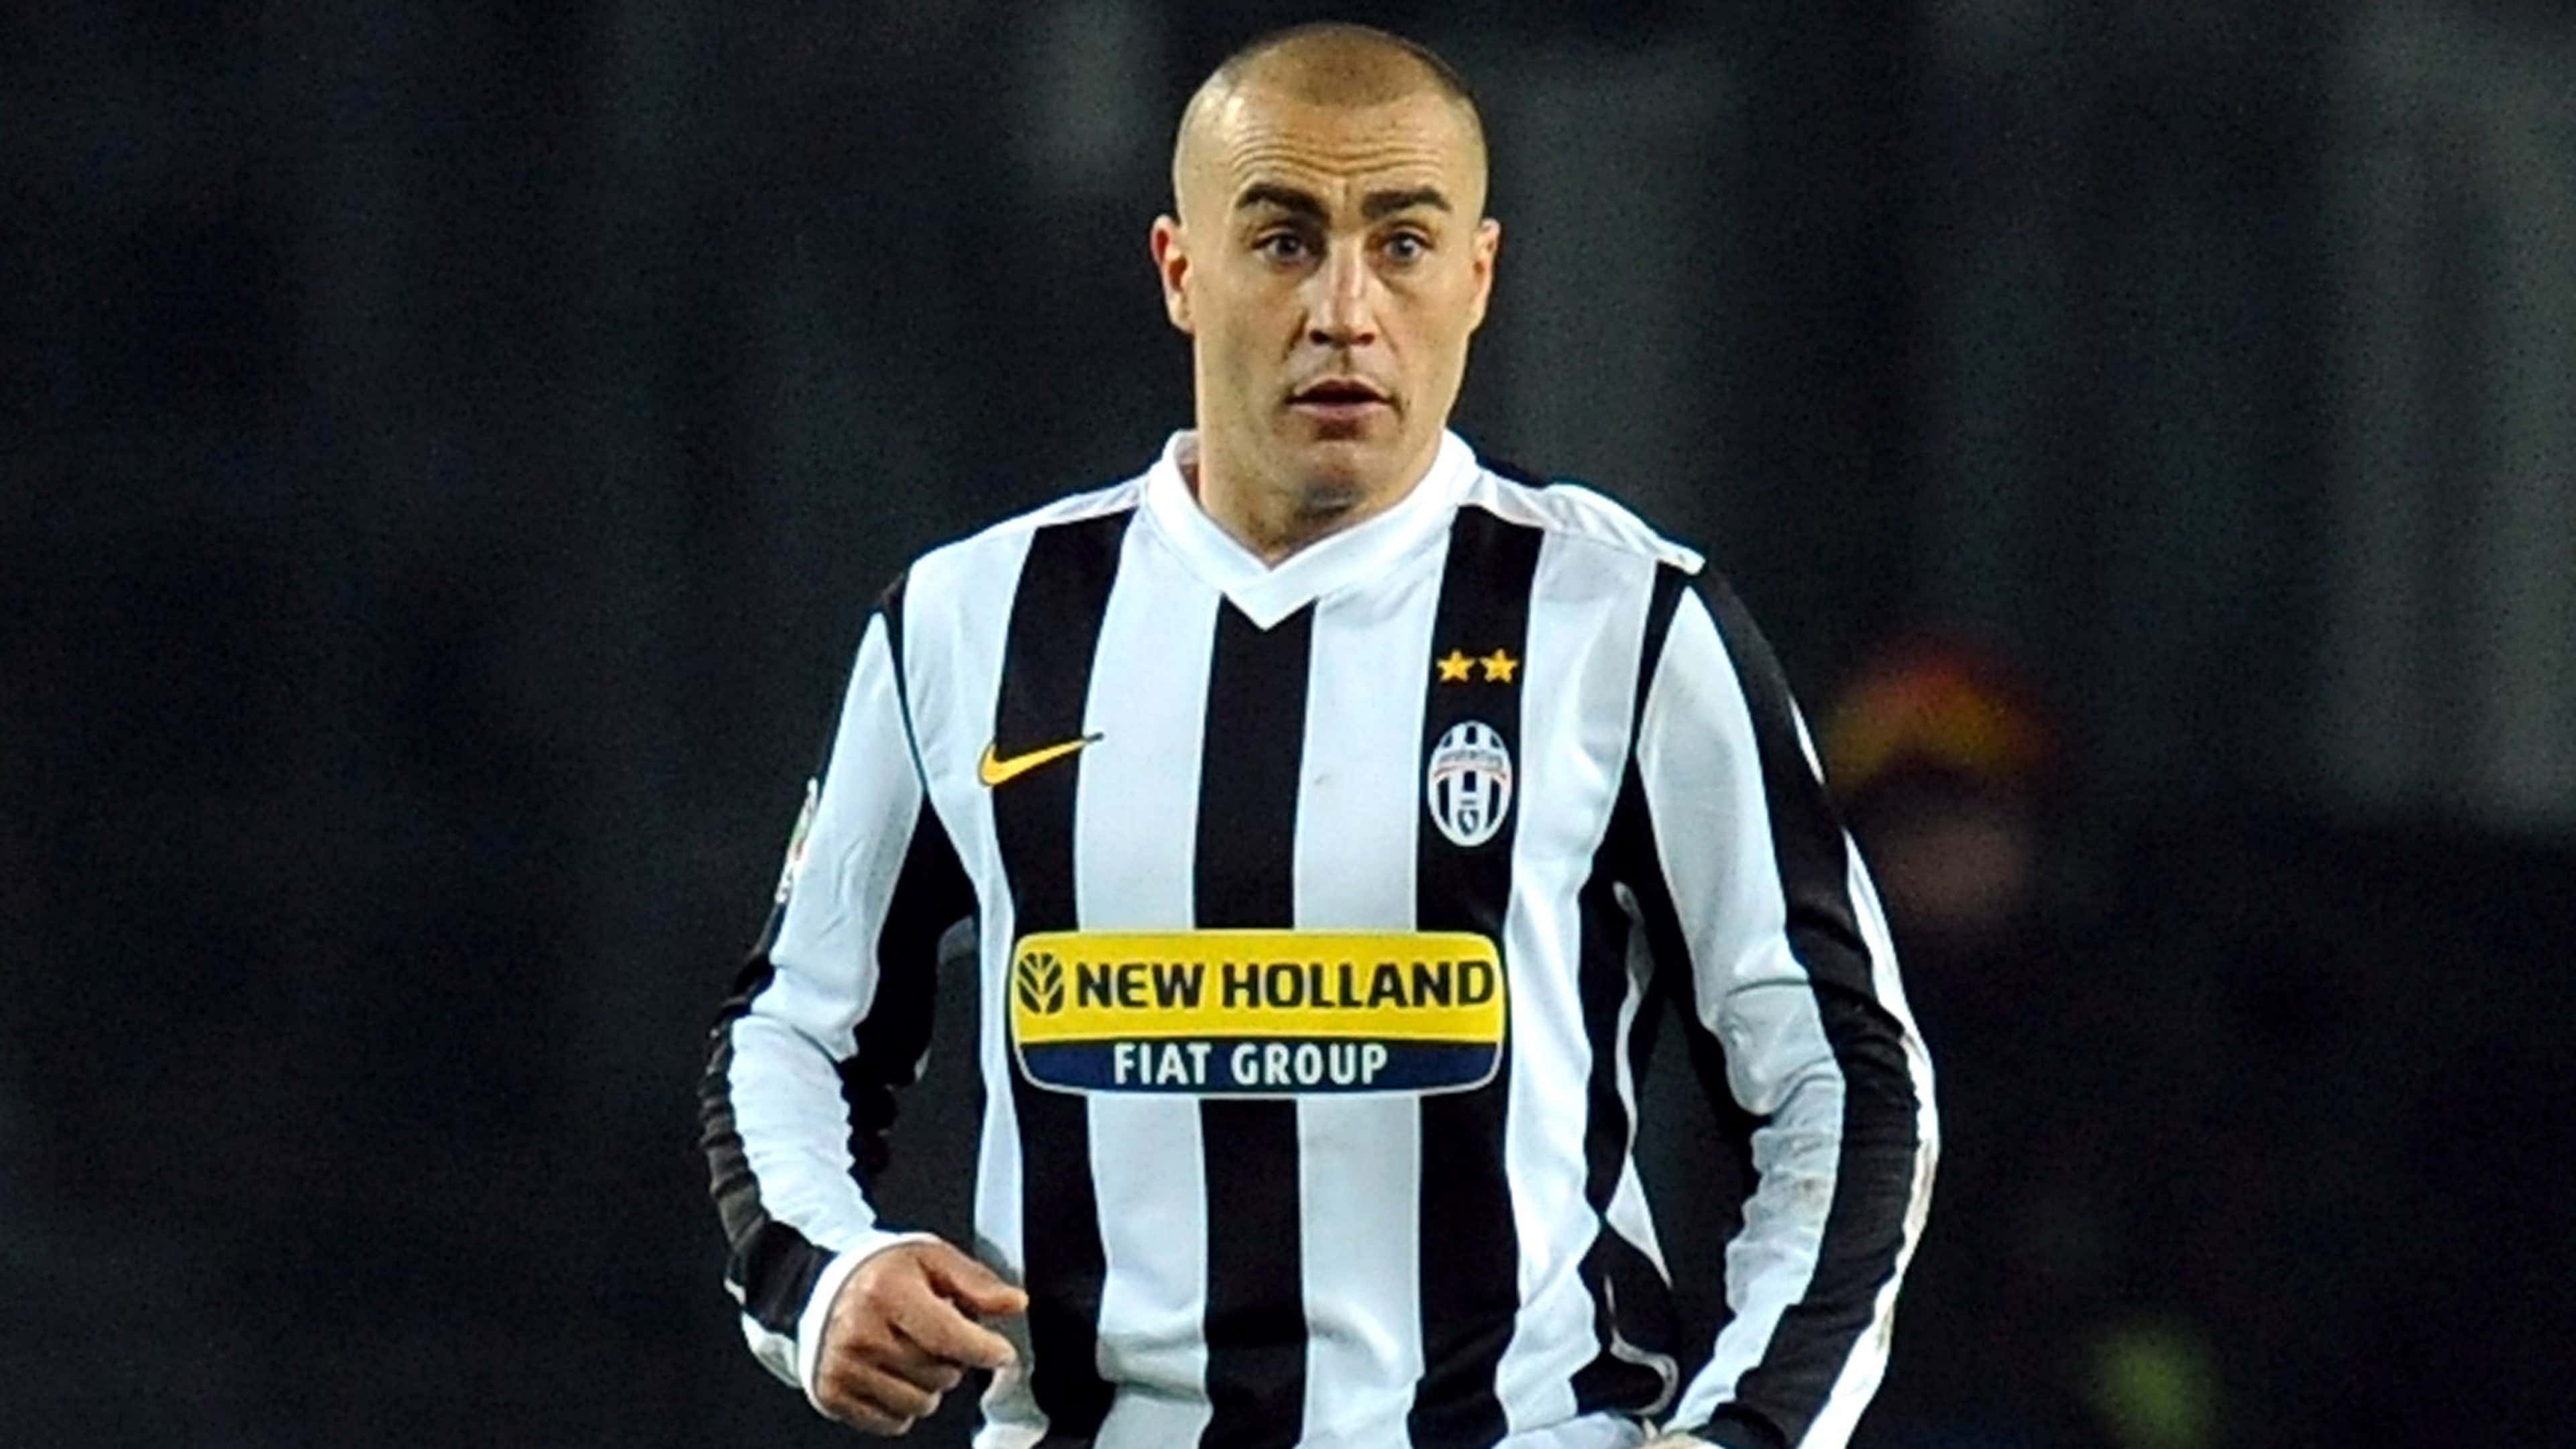 Fabio-Cannavaro-Juventus-Turin